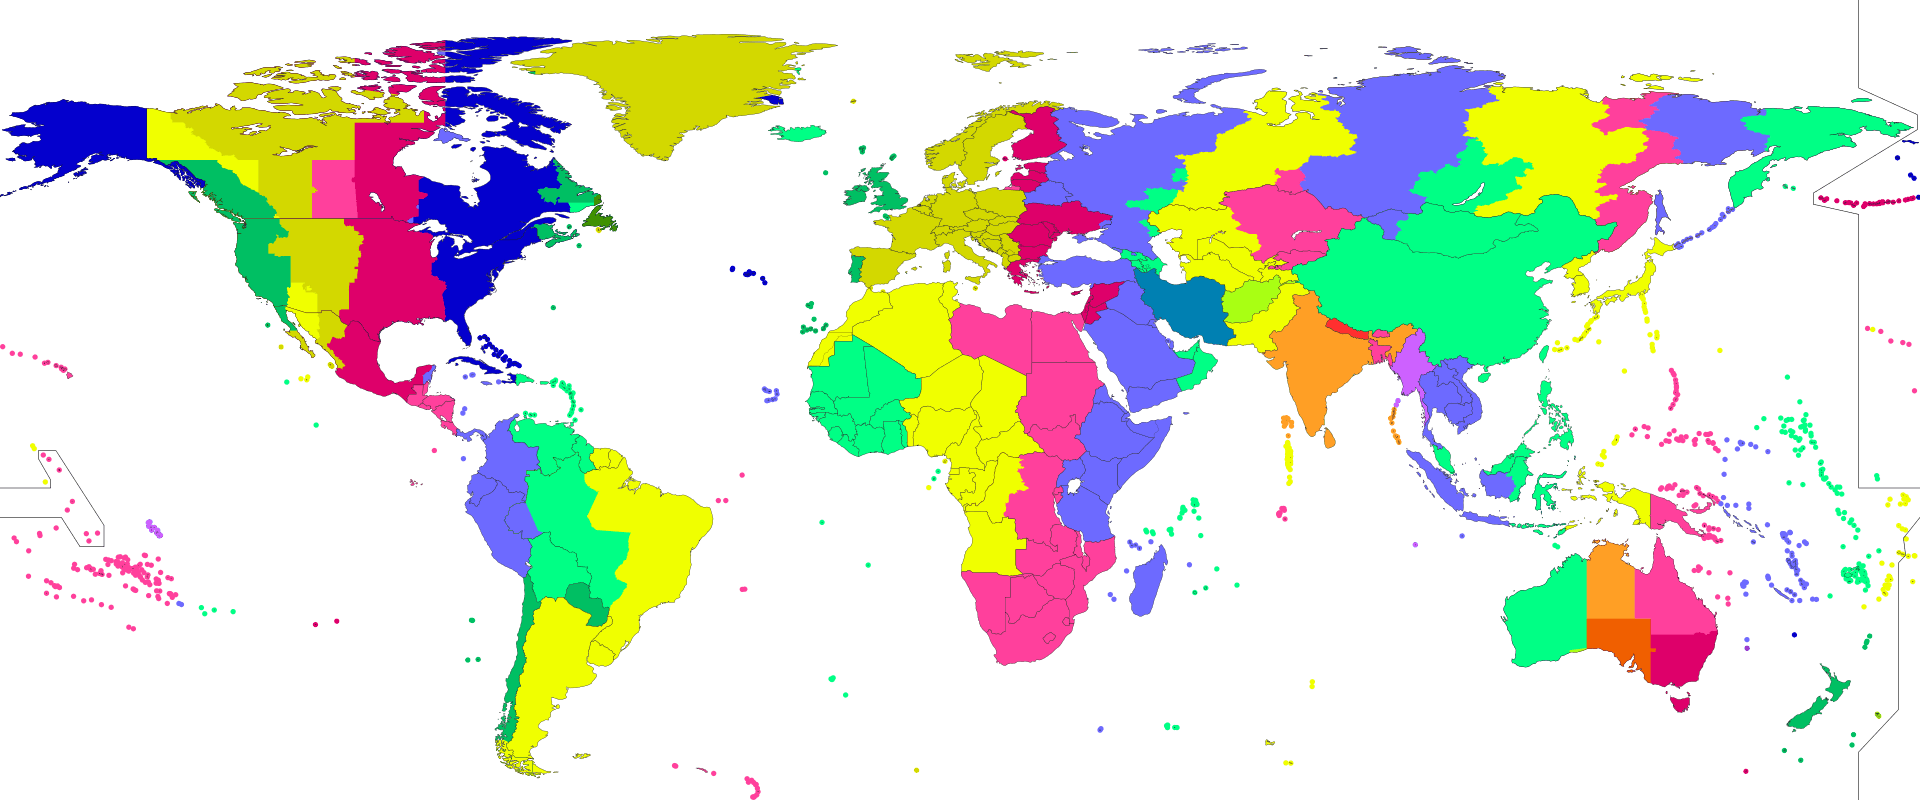 Mapa świata z zaznaczonymi strefami czasowymi